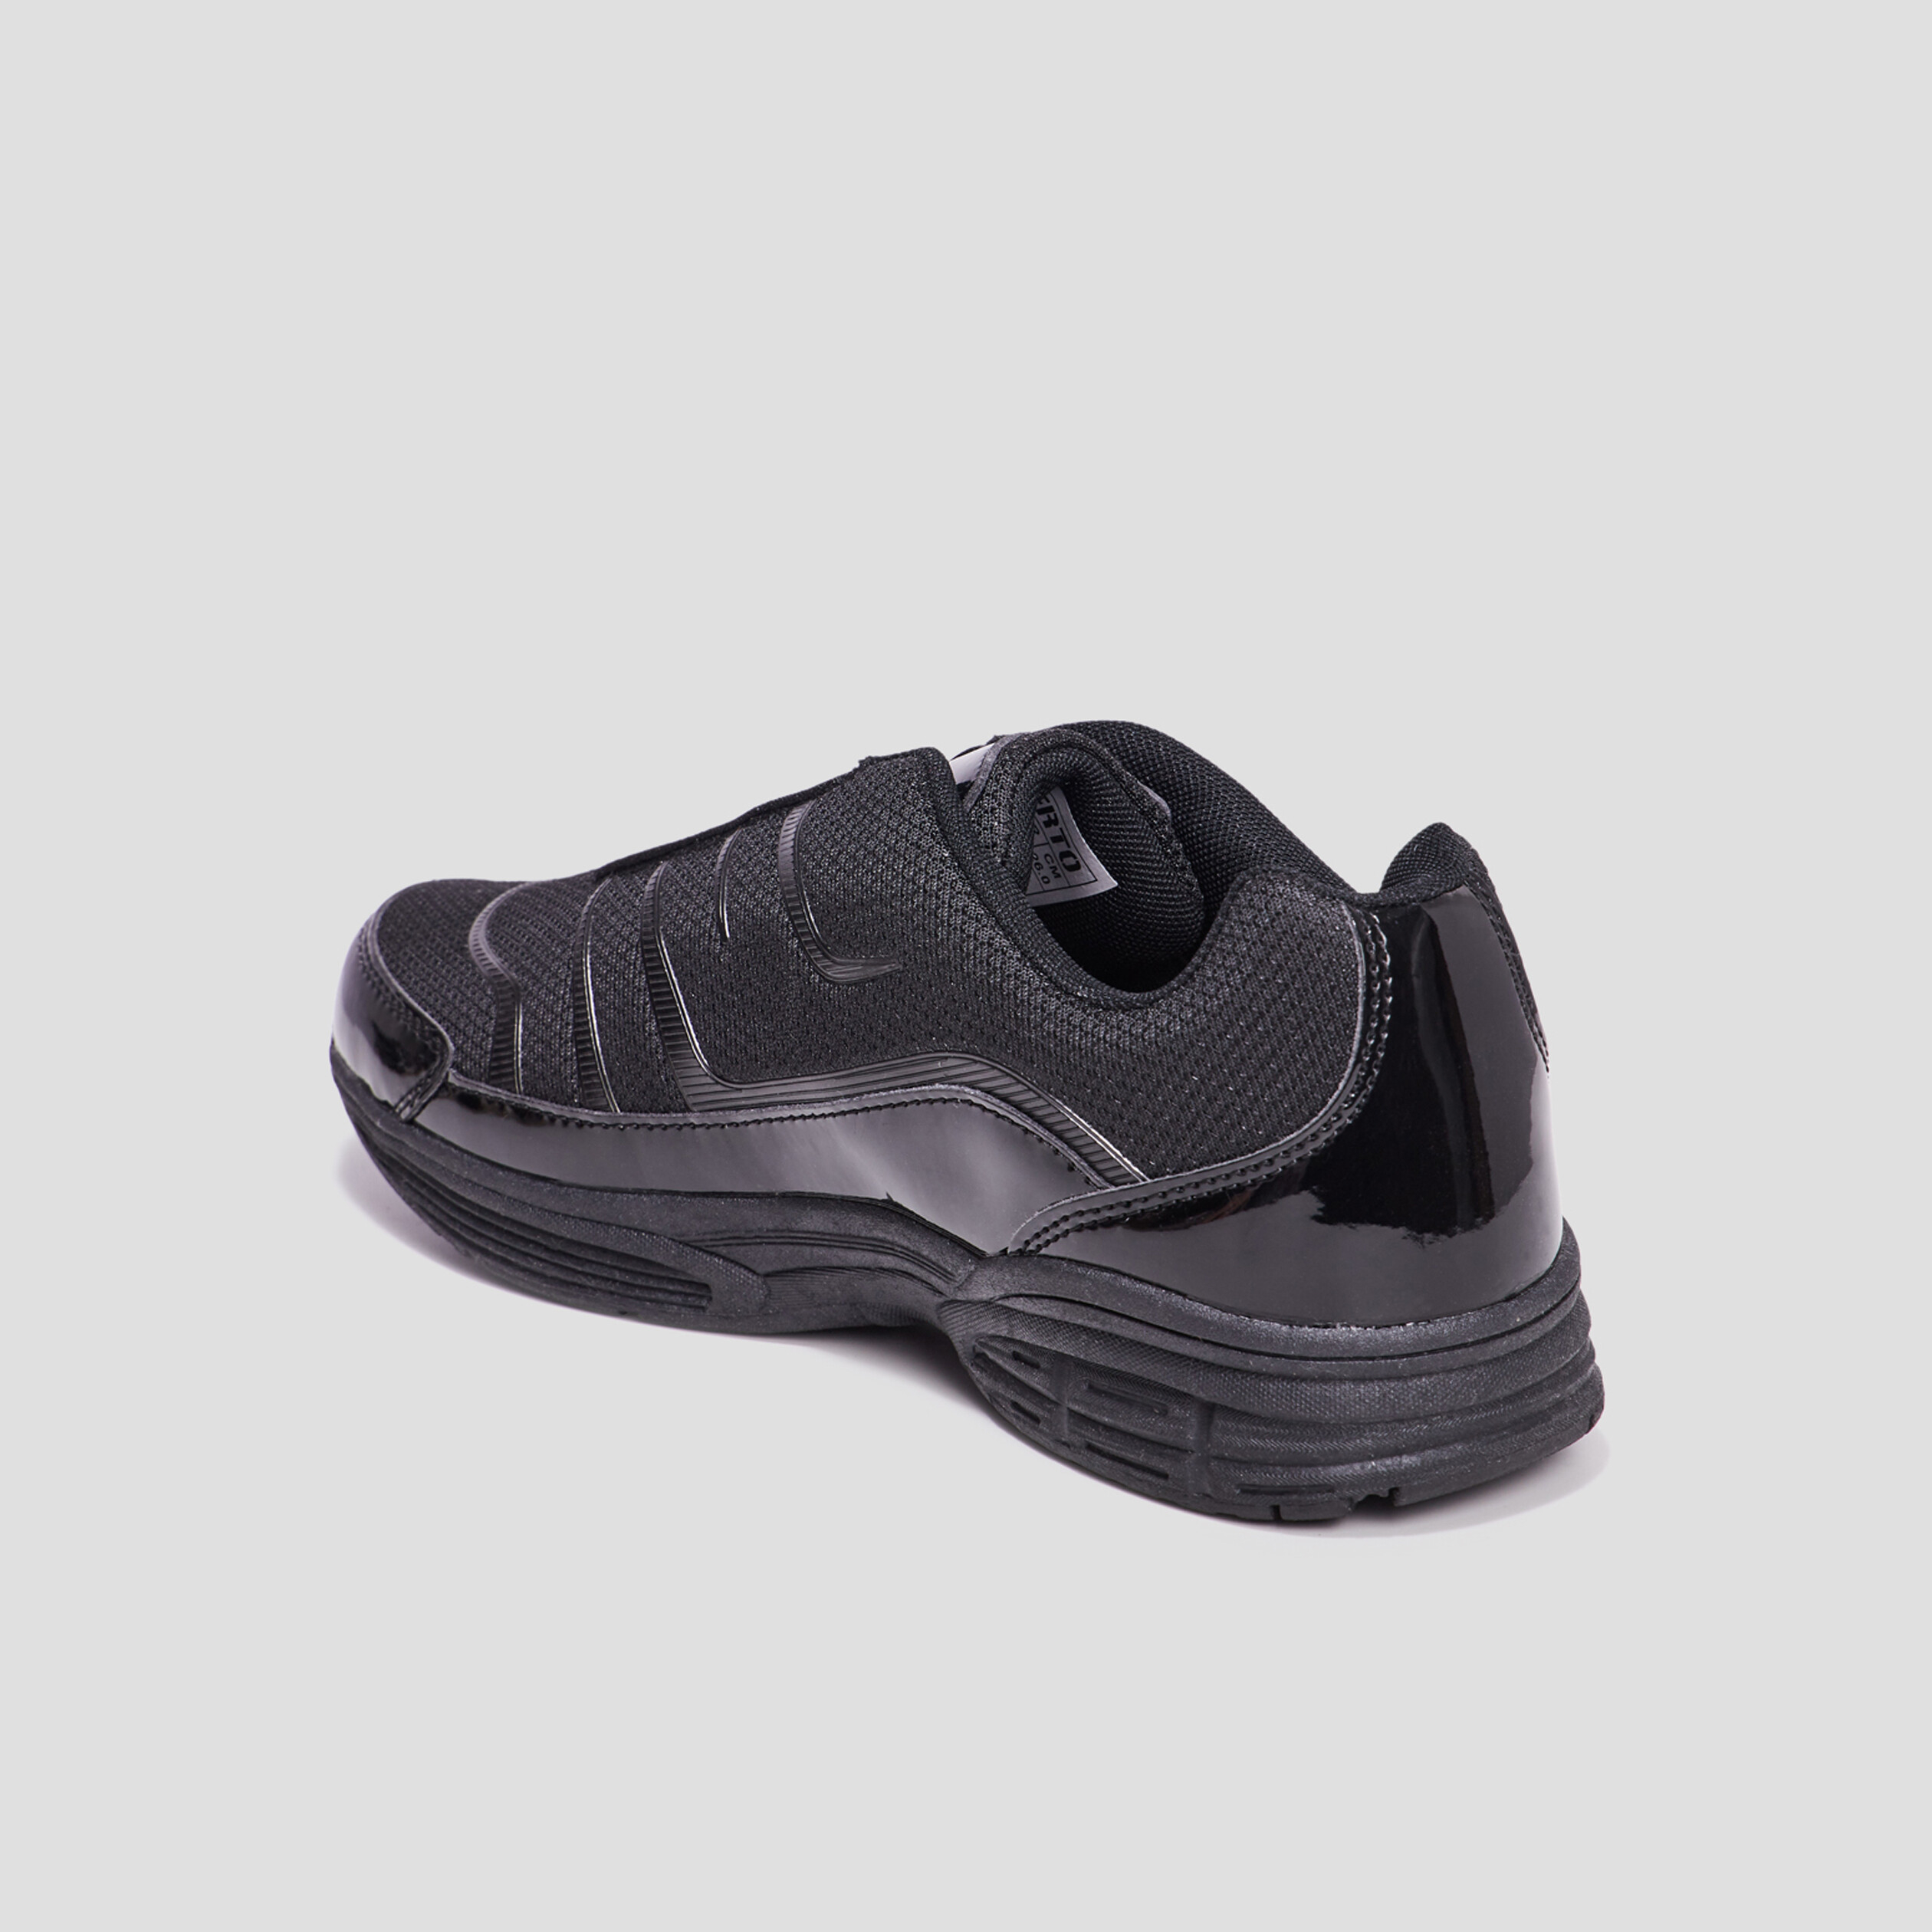 Femme | Chaussures en toile MISS LIBERTO Baskets compensées unies Noir Noir  > Ilmondodinone